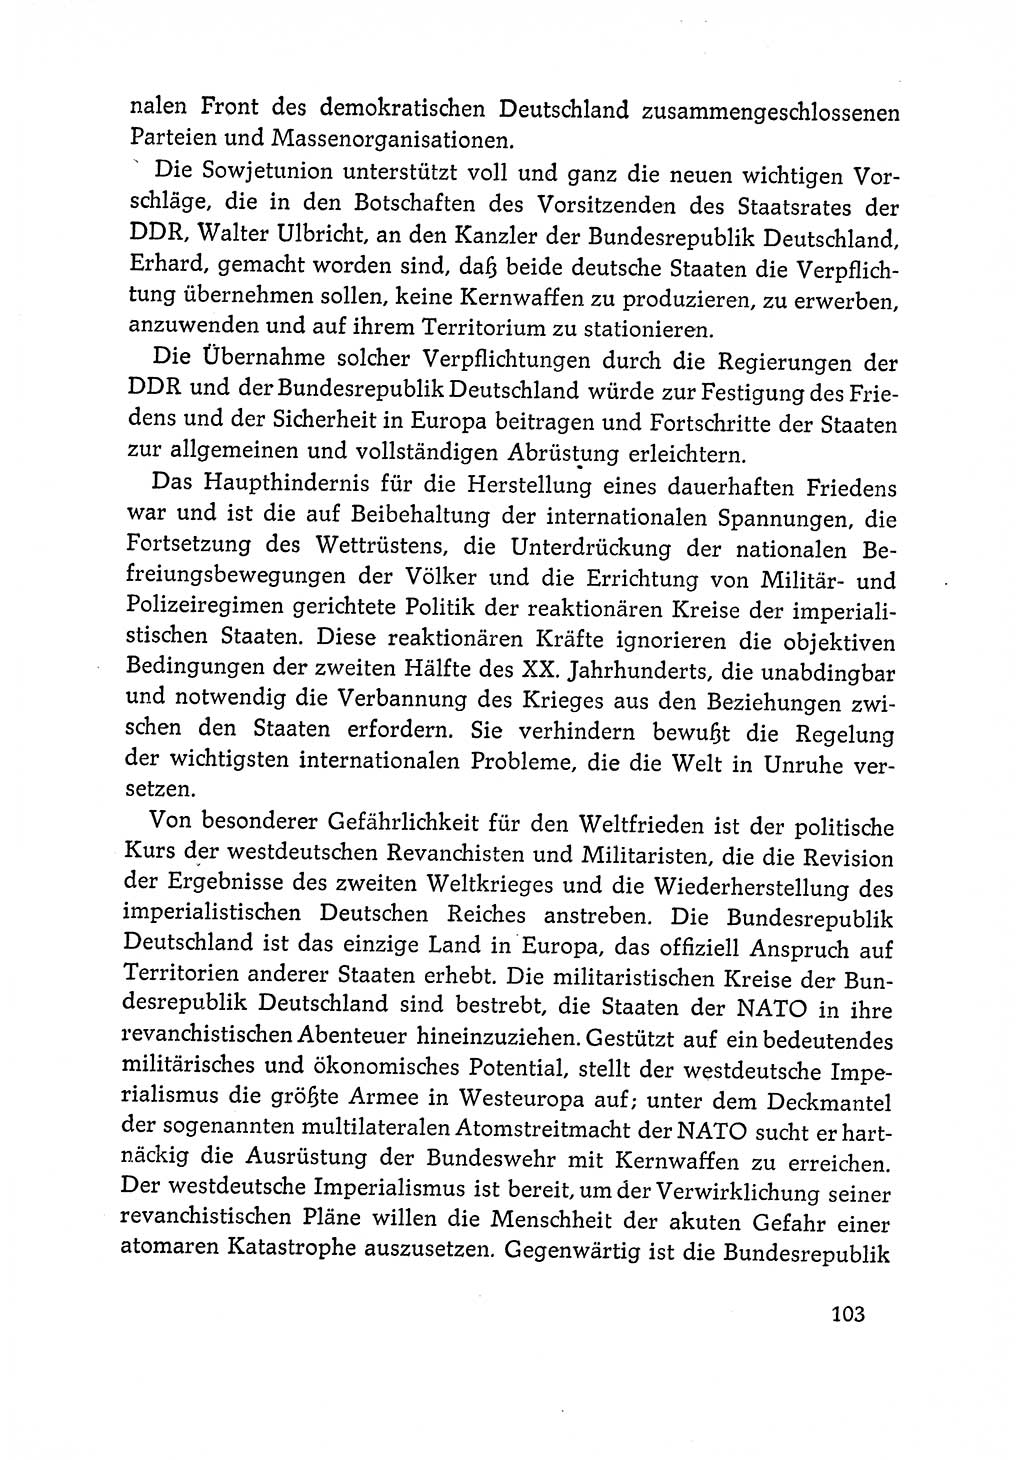 Dokumente der Sozialistischen Einheitspartei Deutschlands (SED) [Deutsche Demokratische Republik (DDR)] 1964-1965, Seite 103 (Dok. SED DDR 1964-1965, S. 103)